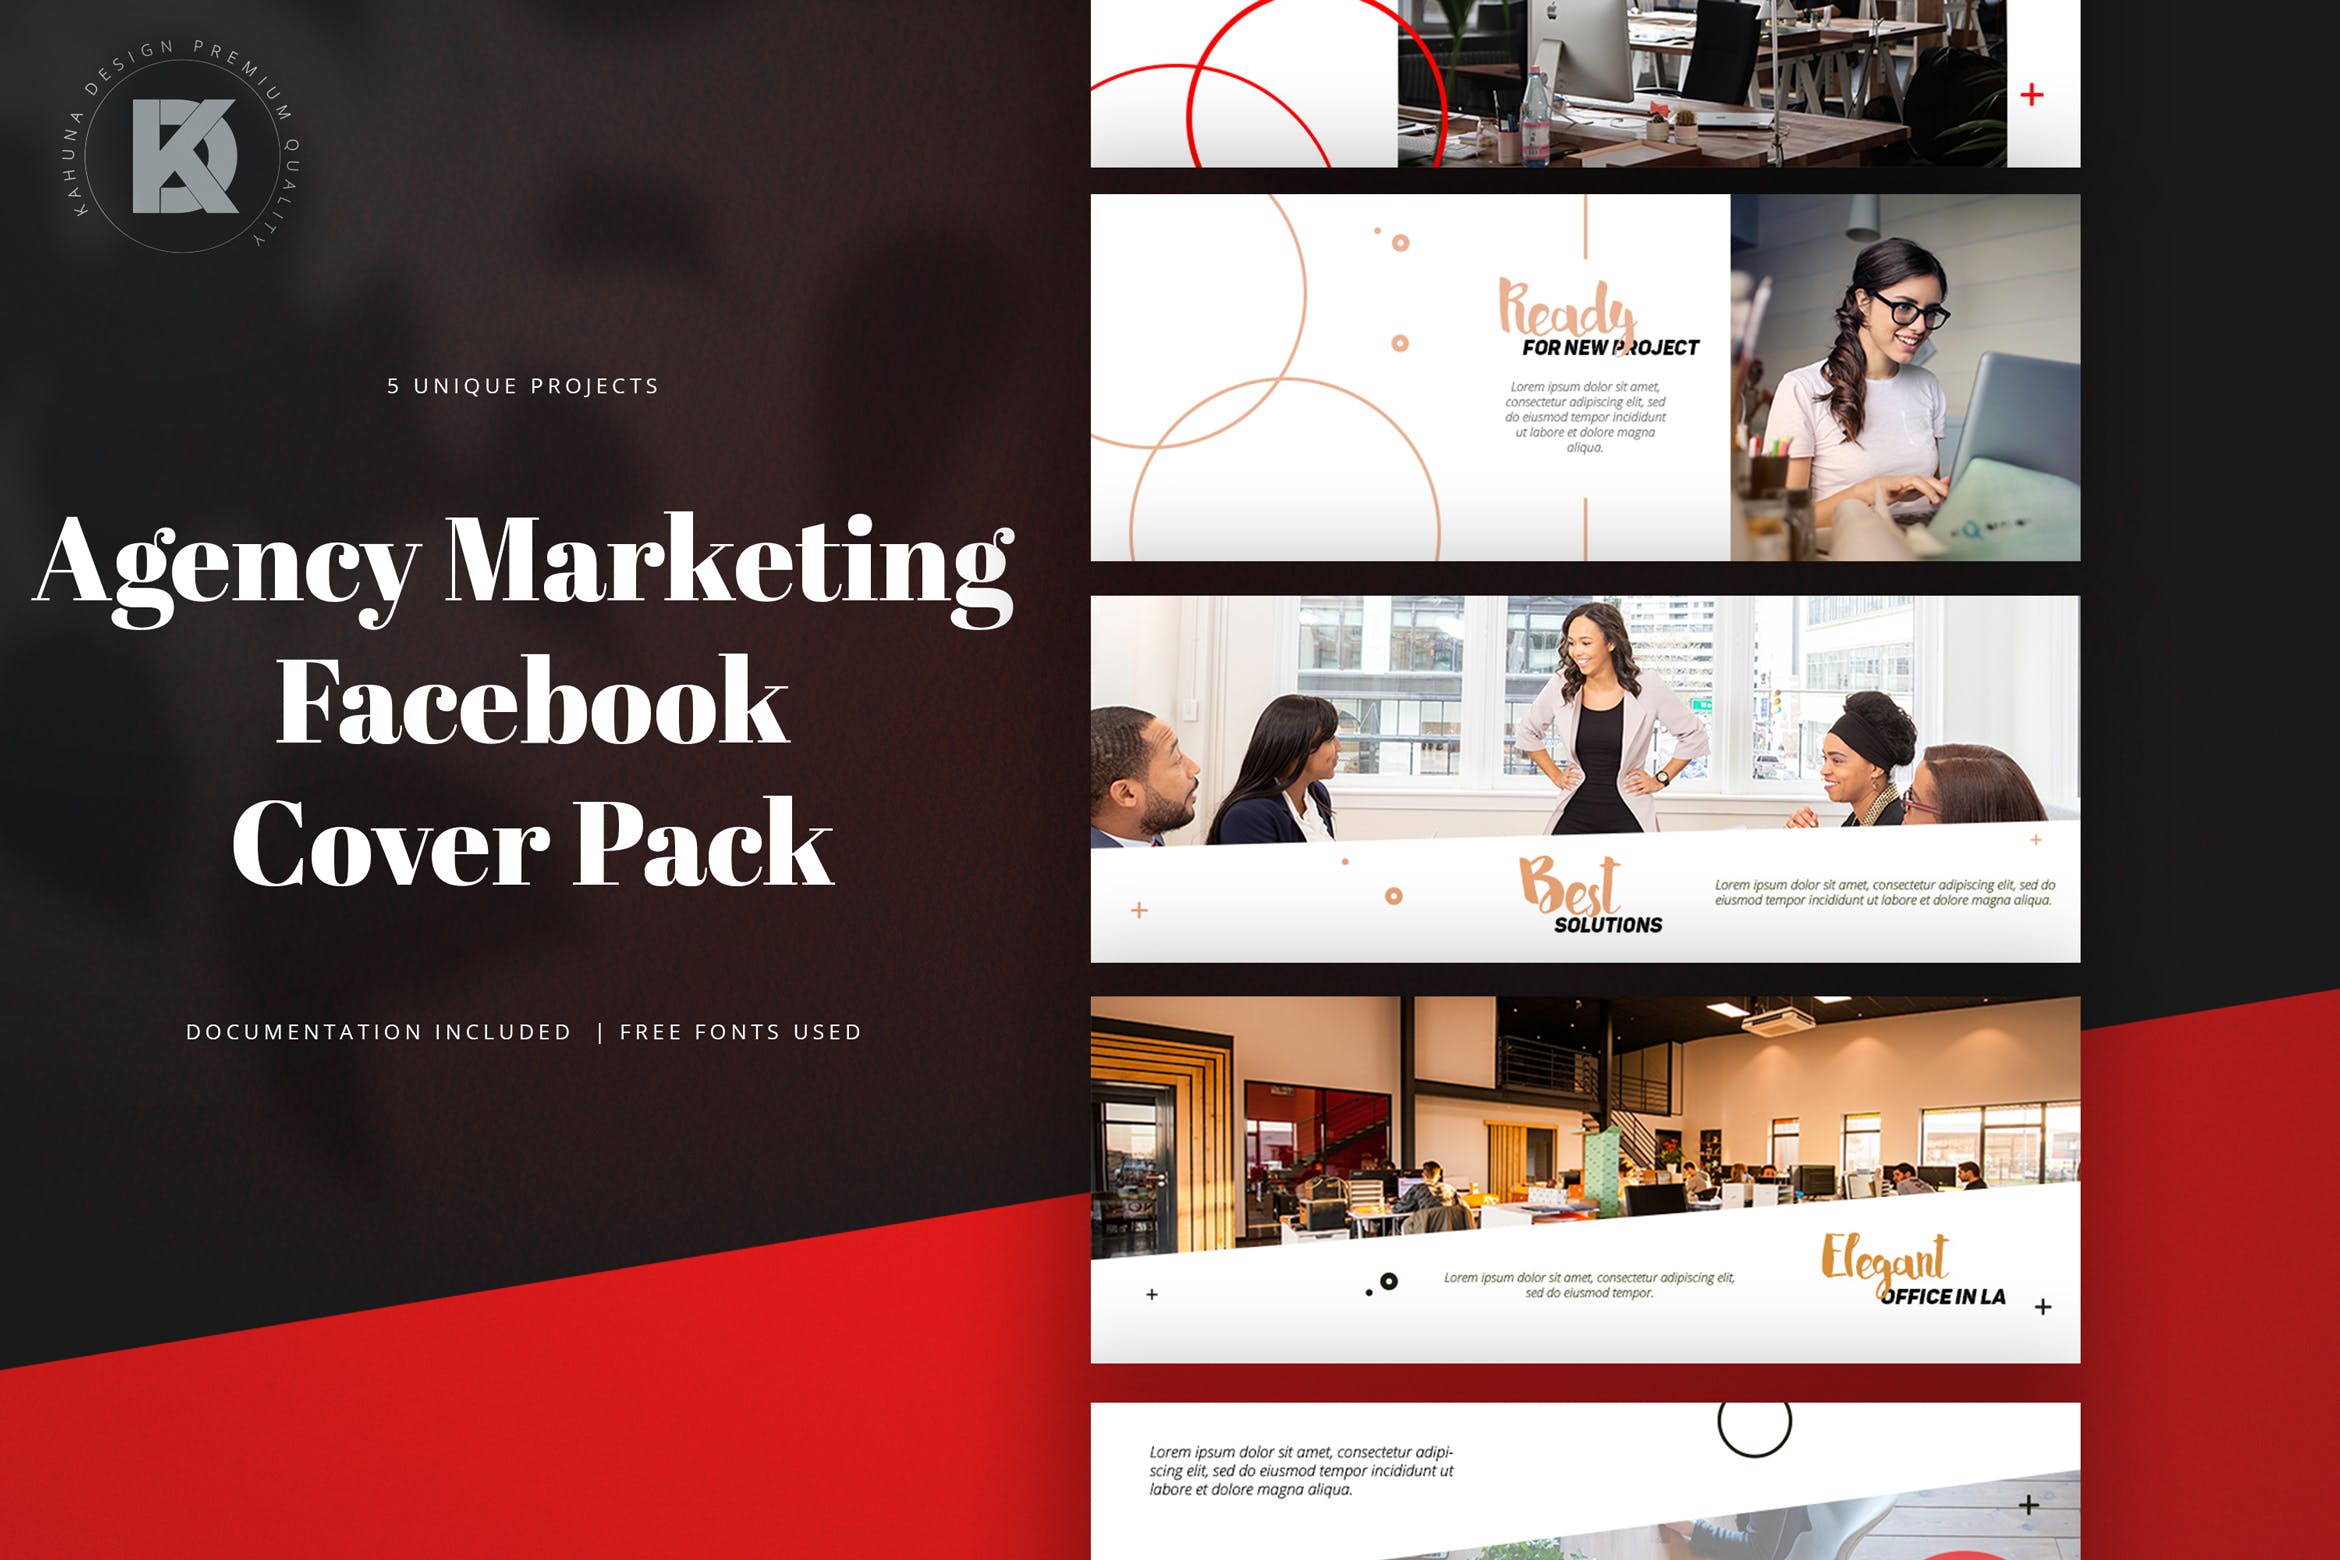 代理行销Facebook封面设计模板第一素材精选 Agency Marketing Facebook Cover Pack插图